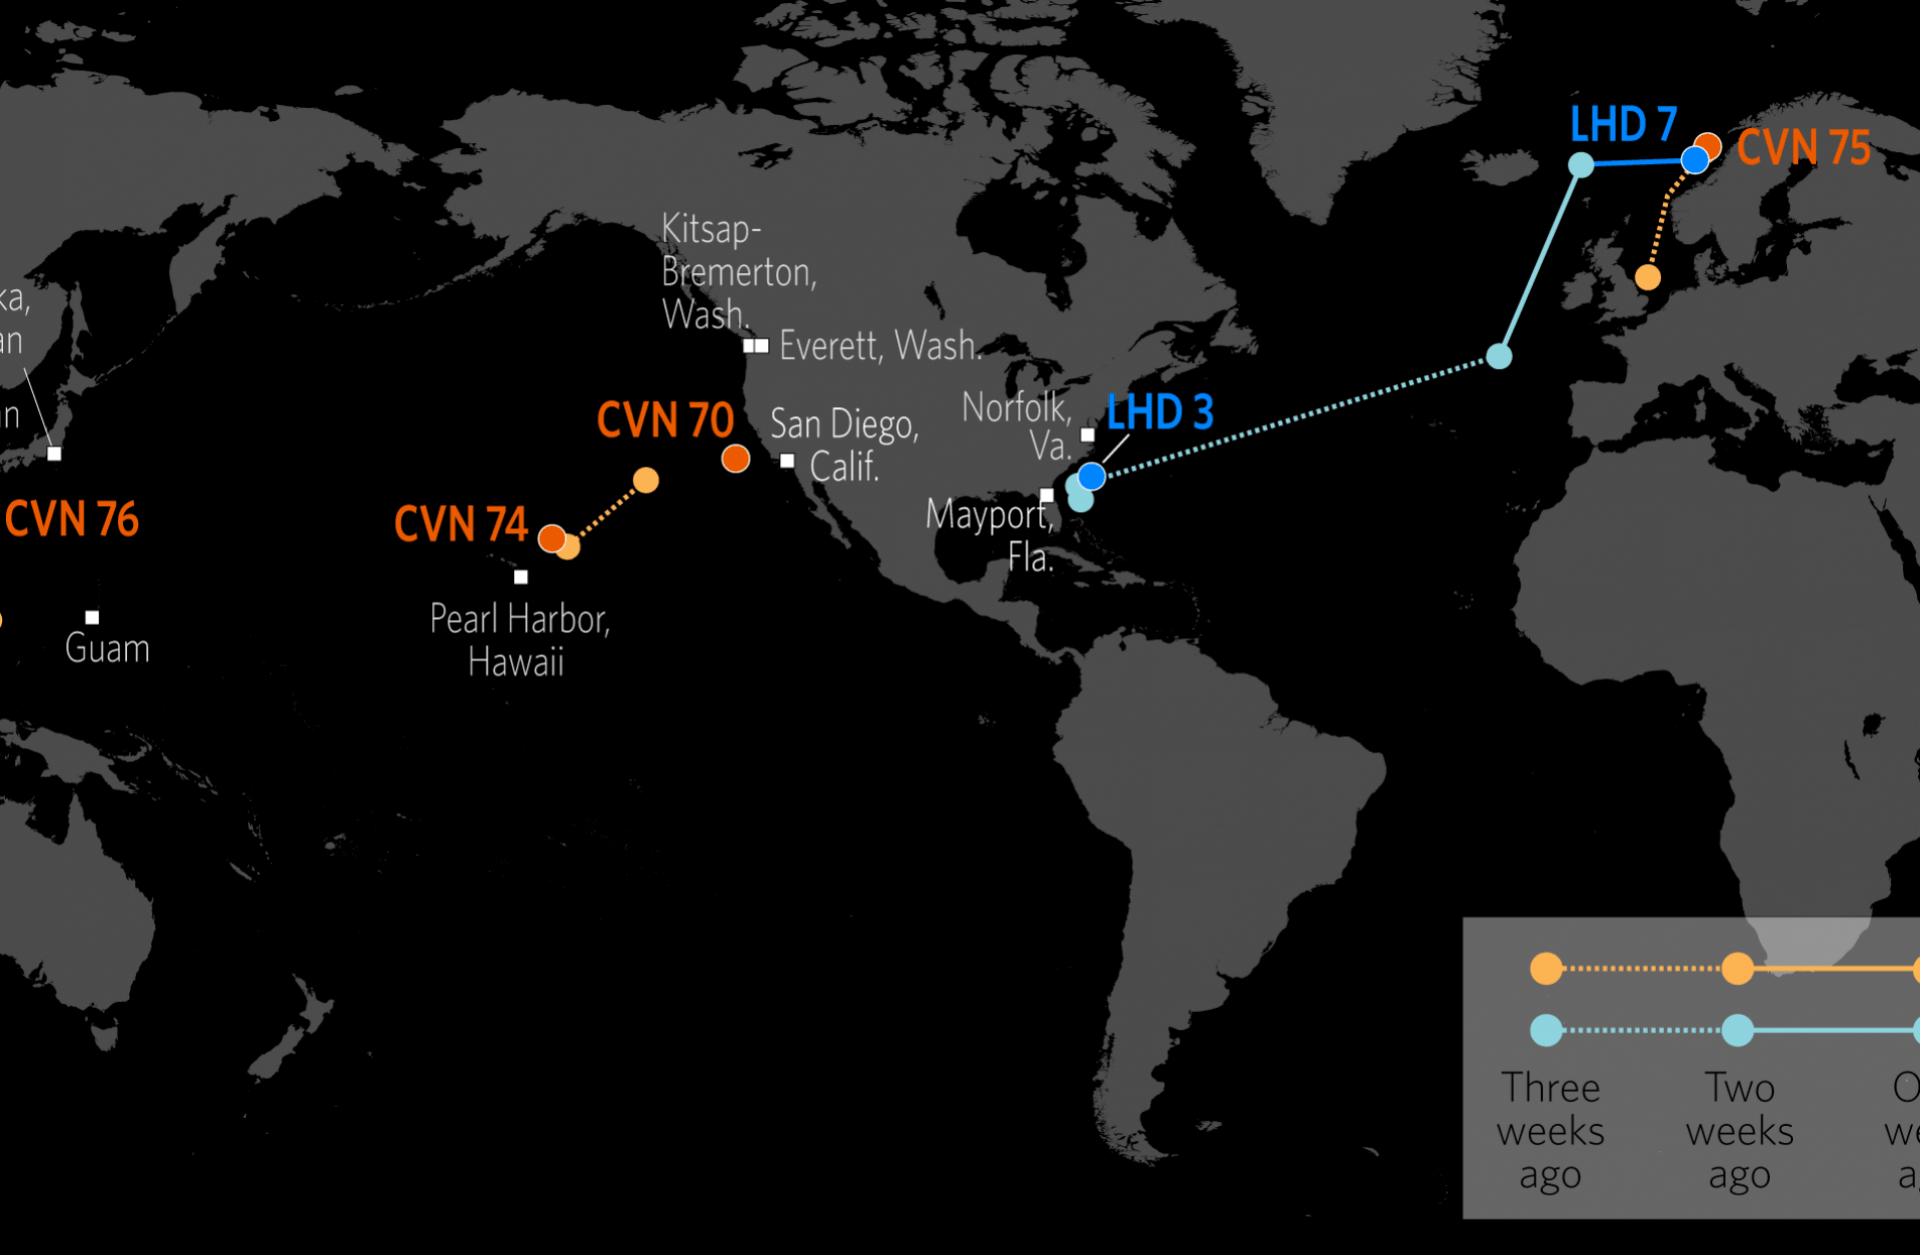 Naval Update Map: Nov. 1, 2018